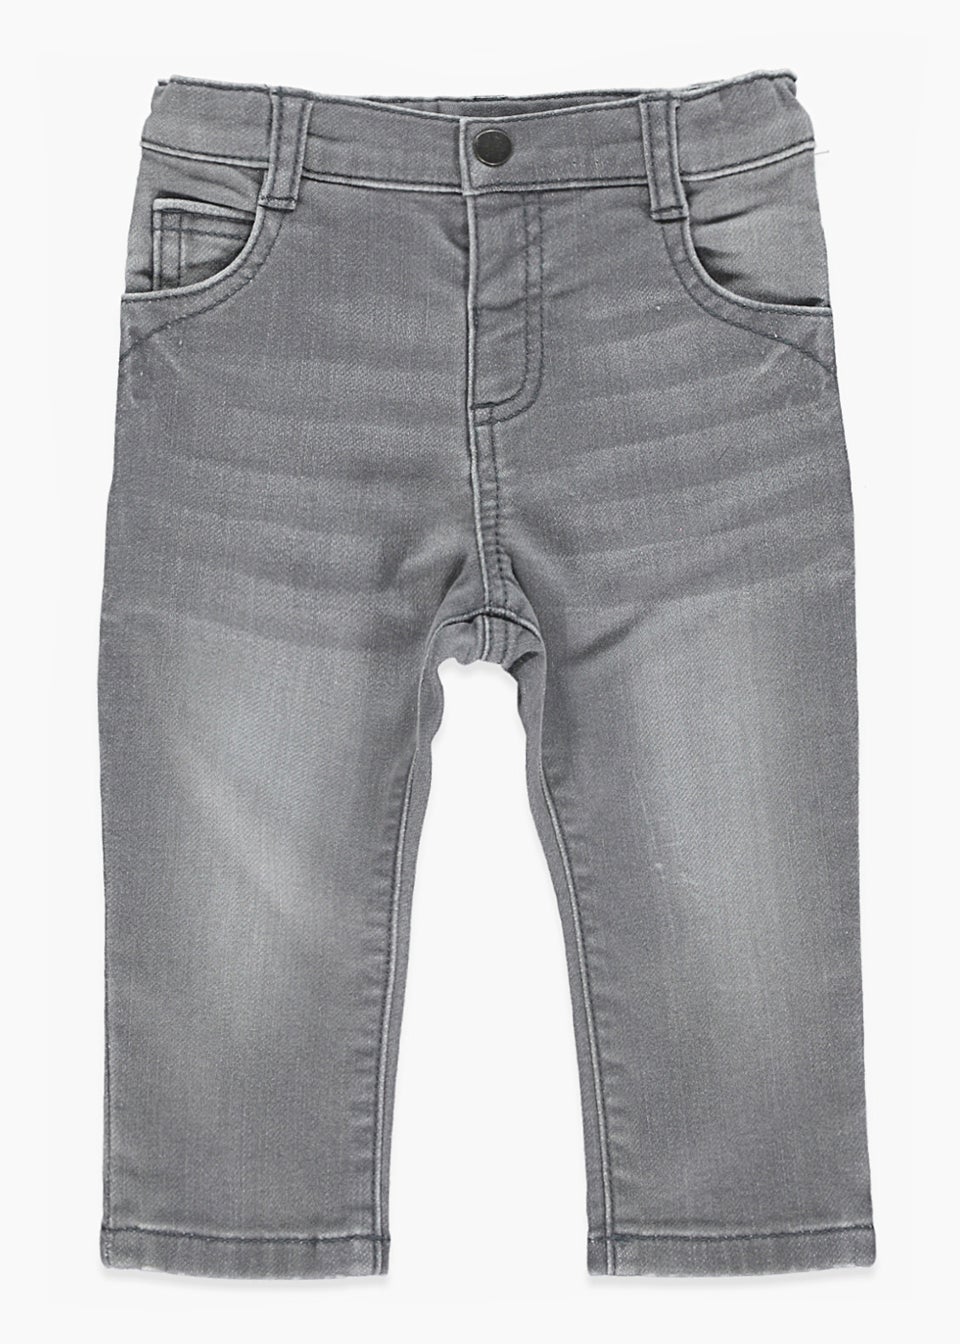 Boys Grey Skinny Jeans (9mths-6yrs)